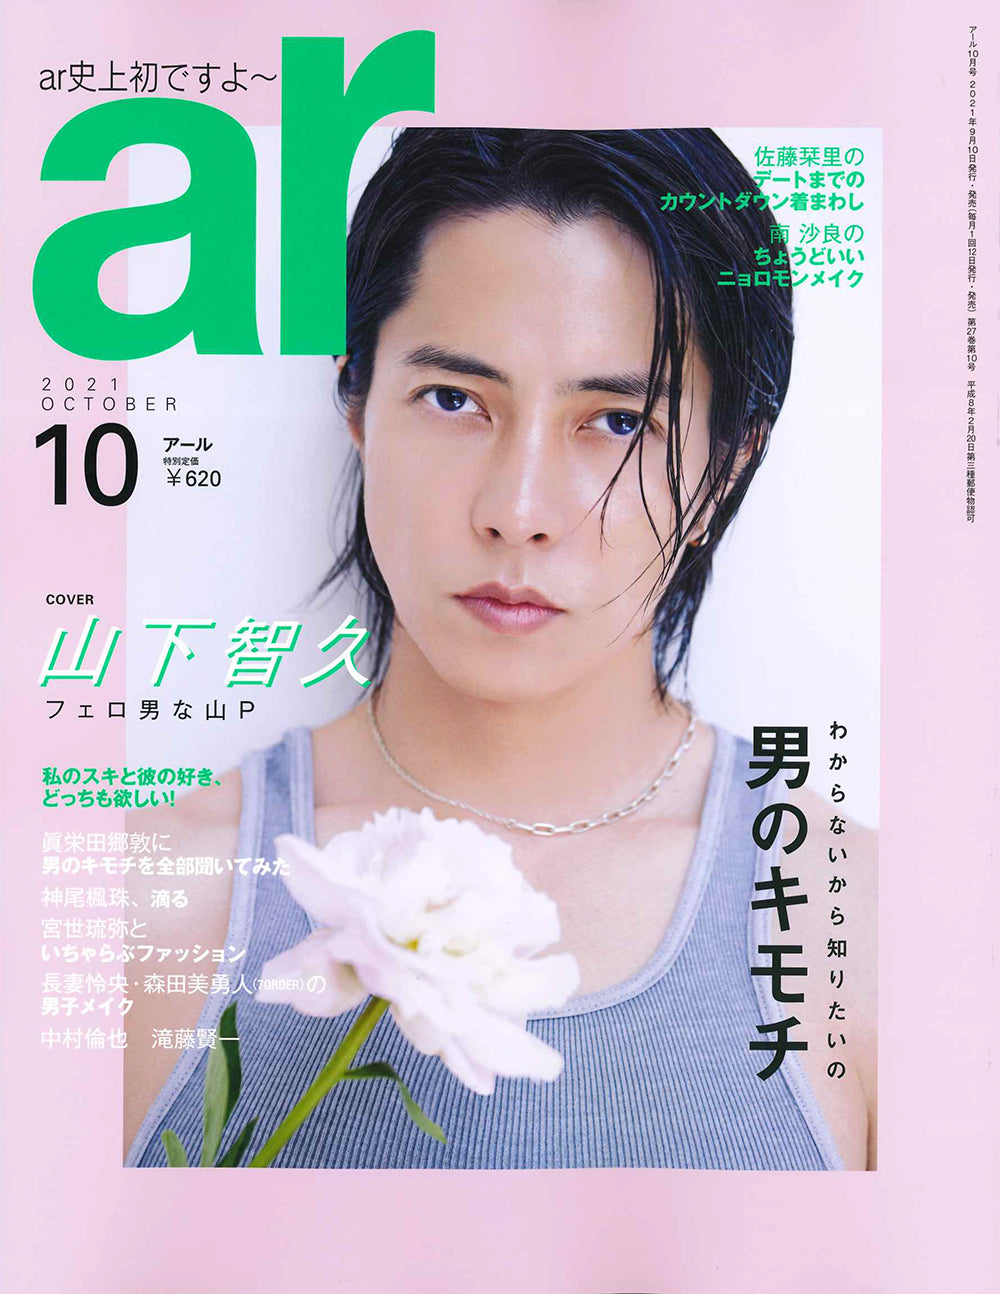 AR magazine japan